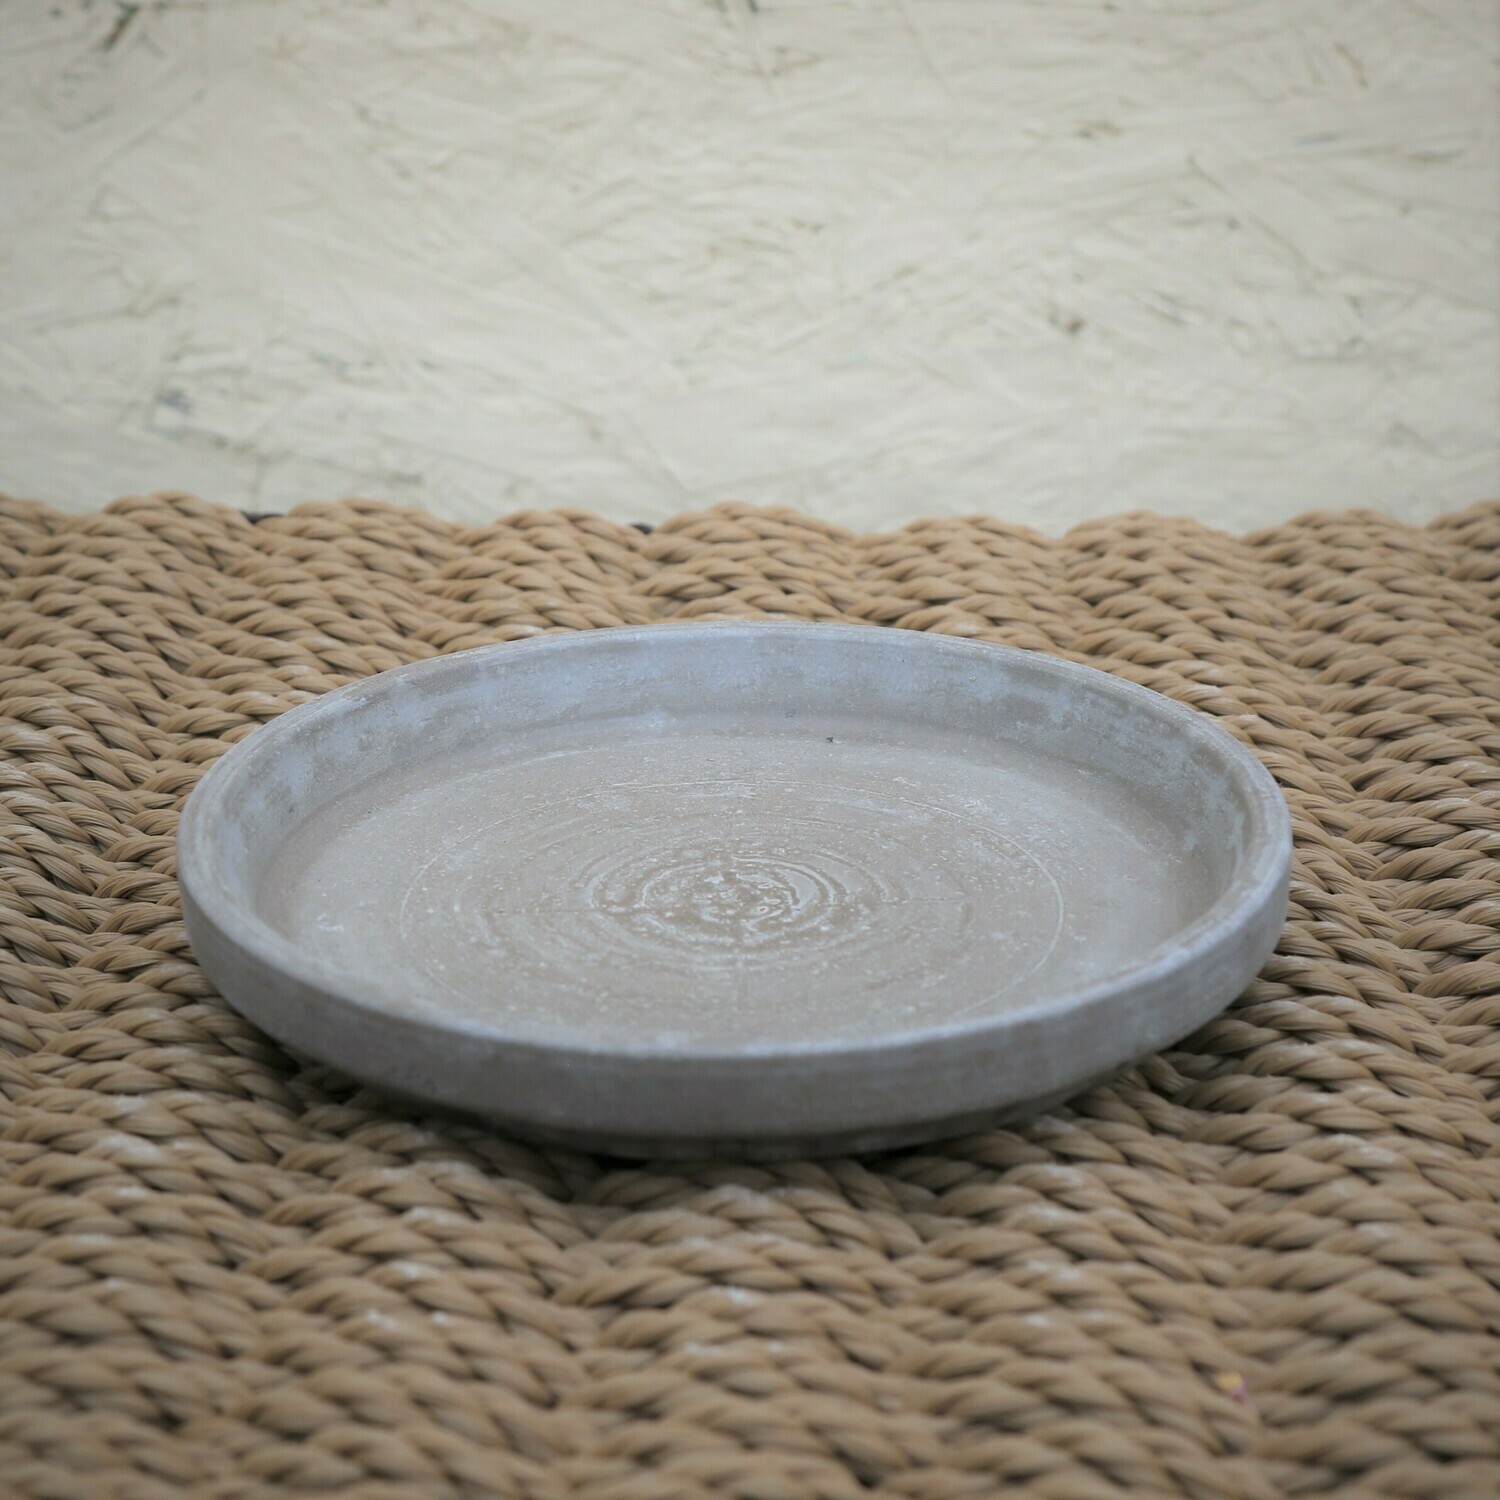 Basalt Clay Saucer 5.5